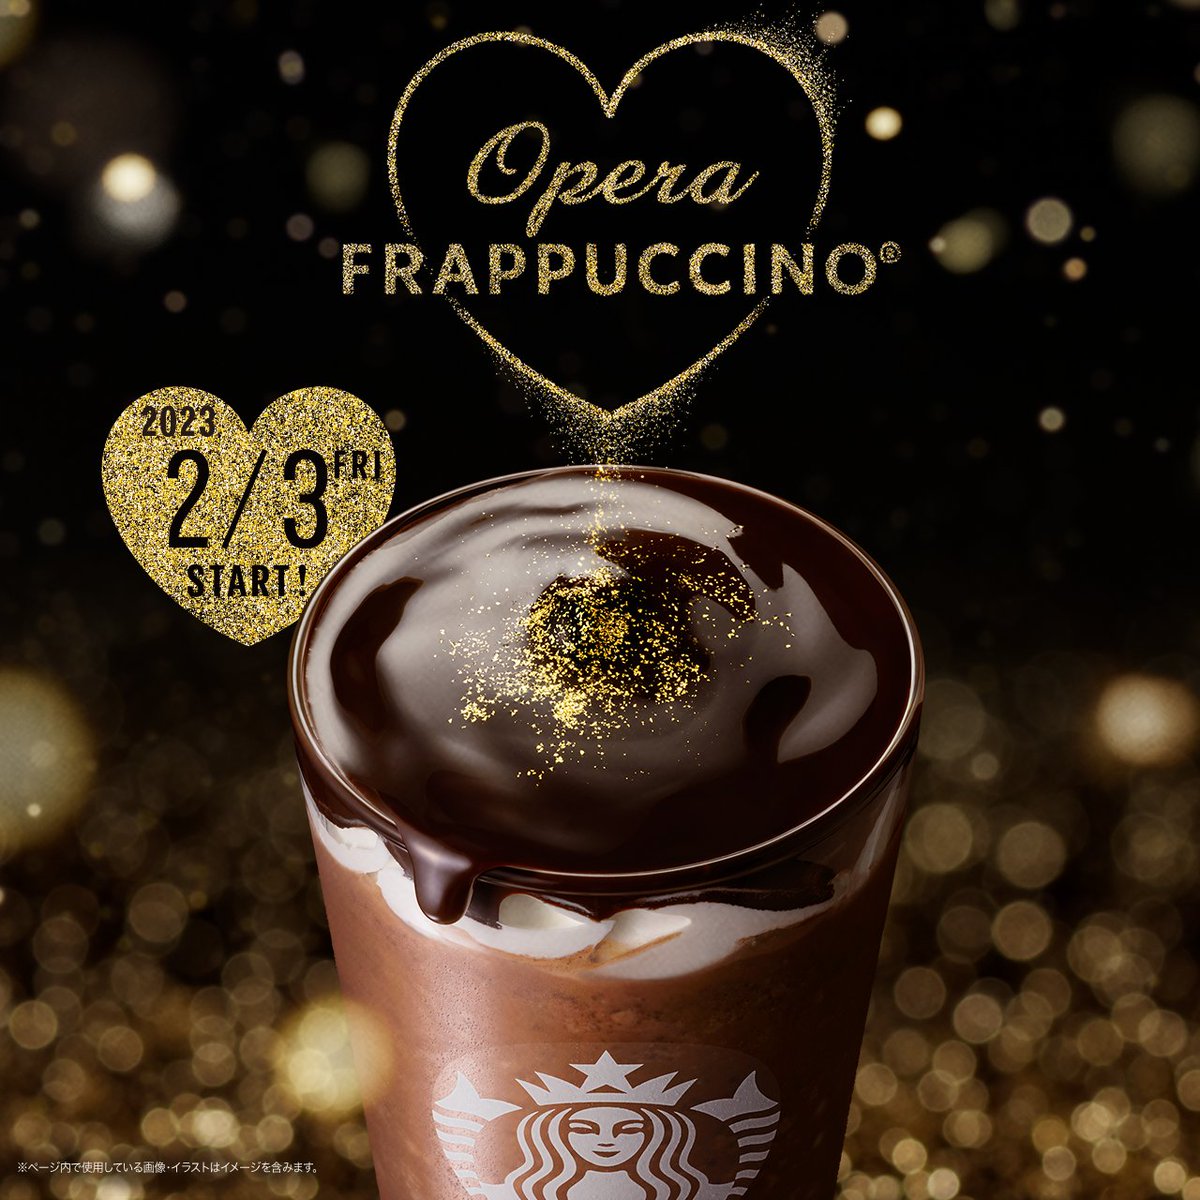 2/3(金)、『#オペラフラペチーノ®』 が新登場♥ オペラケーキのように重なり合うチョコレート感を堪能いただける贅沢な味わいの1杯です。 どうぞお楽しみに✨